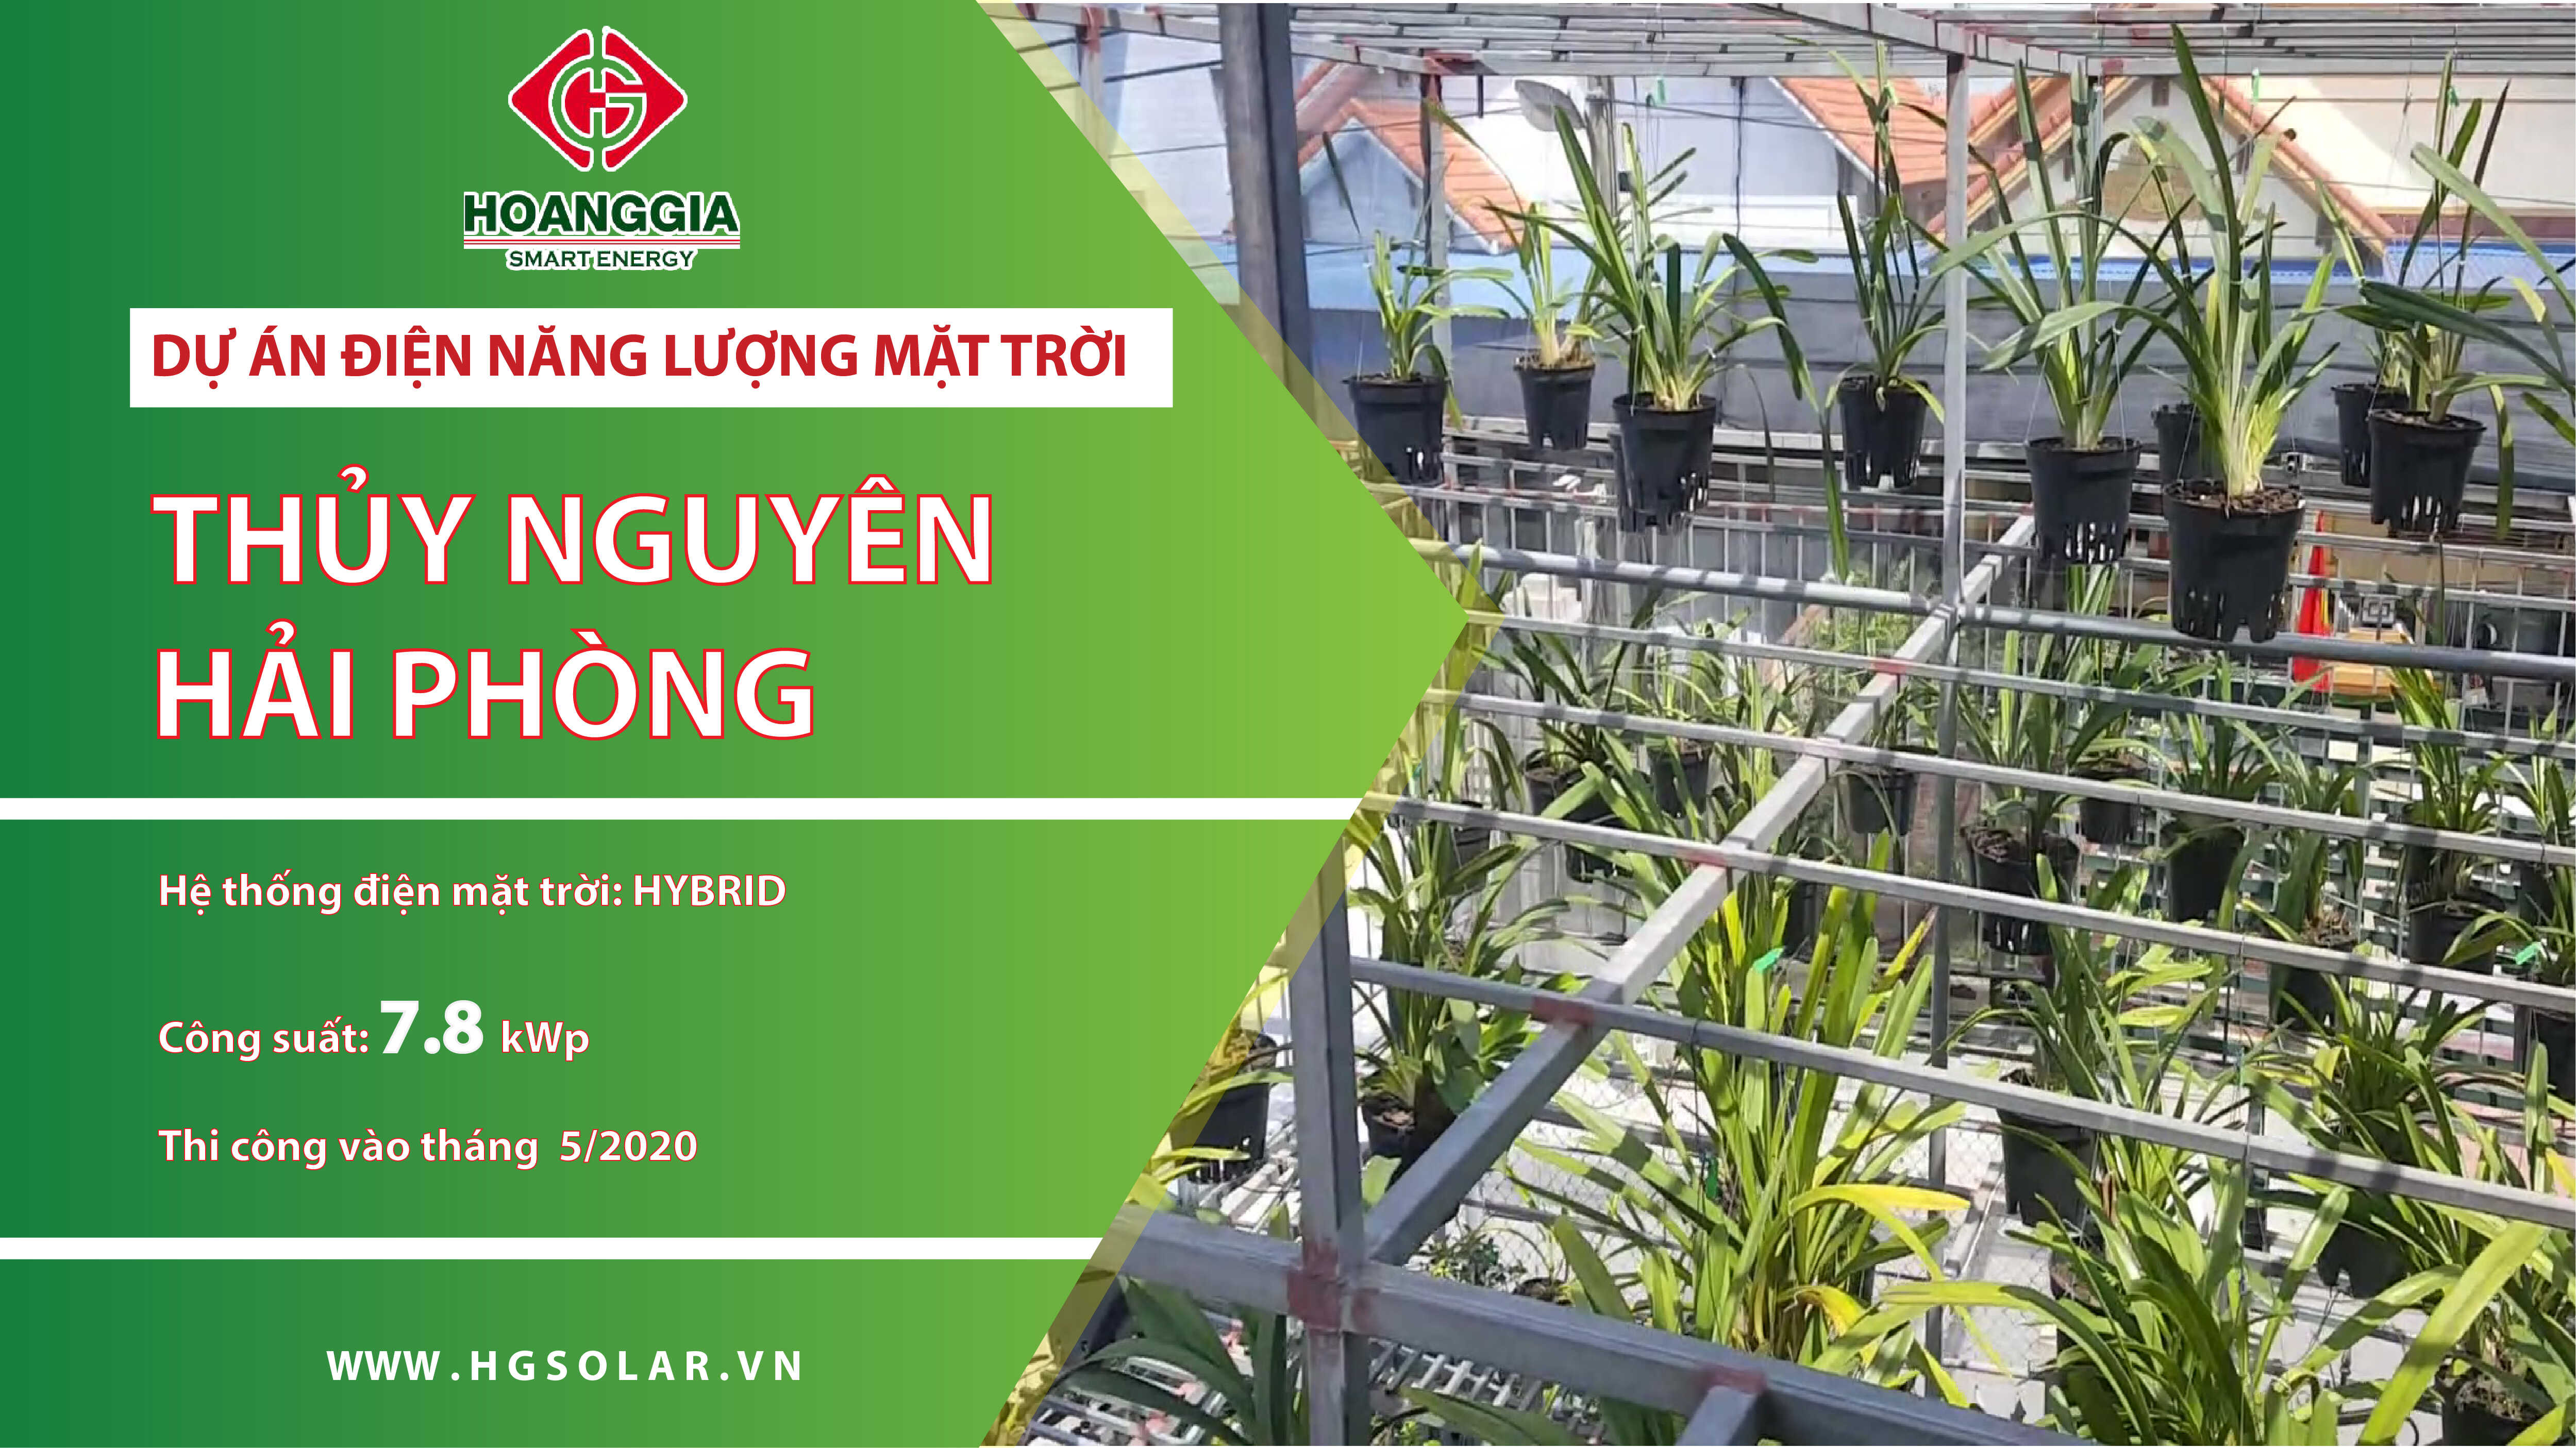 Dự án: Lắp đặt điện mặt trời hybrid 7,8kw cho vườn lan tại huyện Thủy Nguyên, Hải Phòng